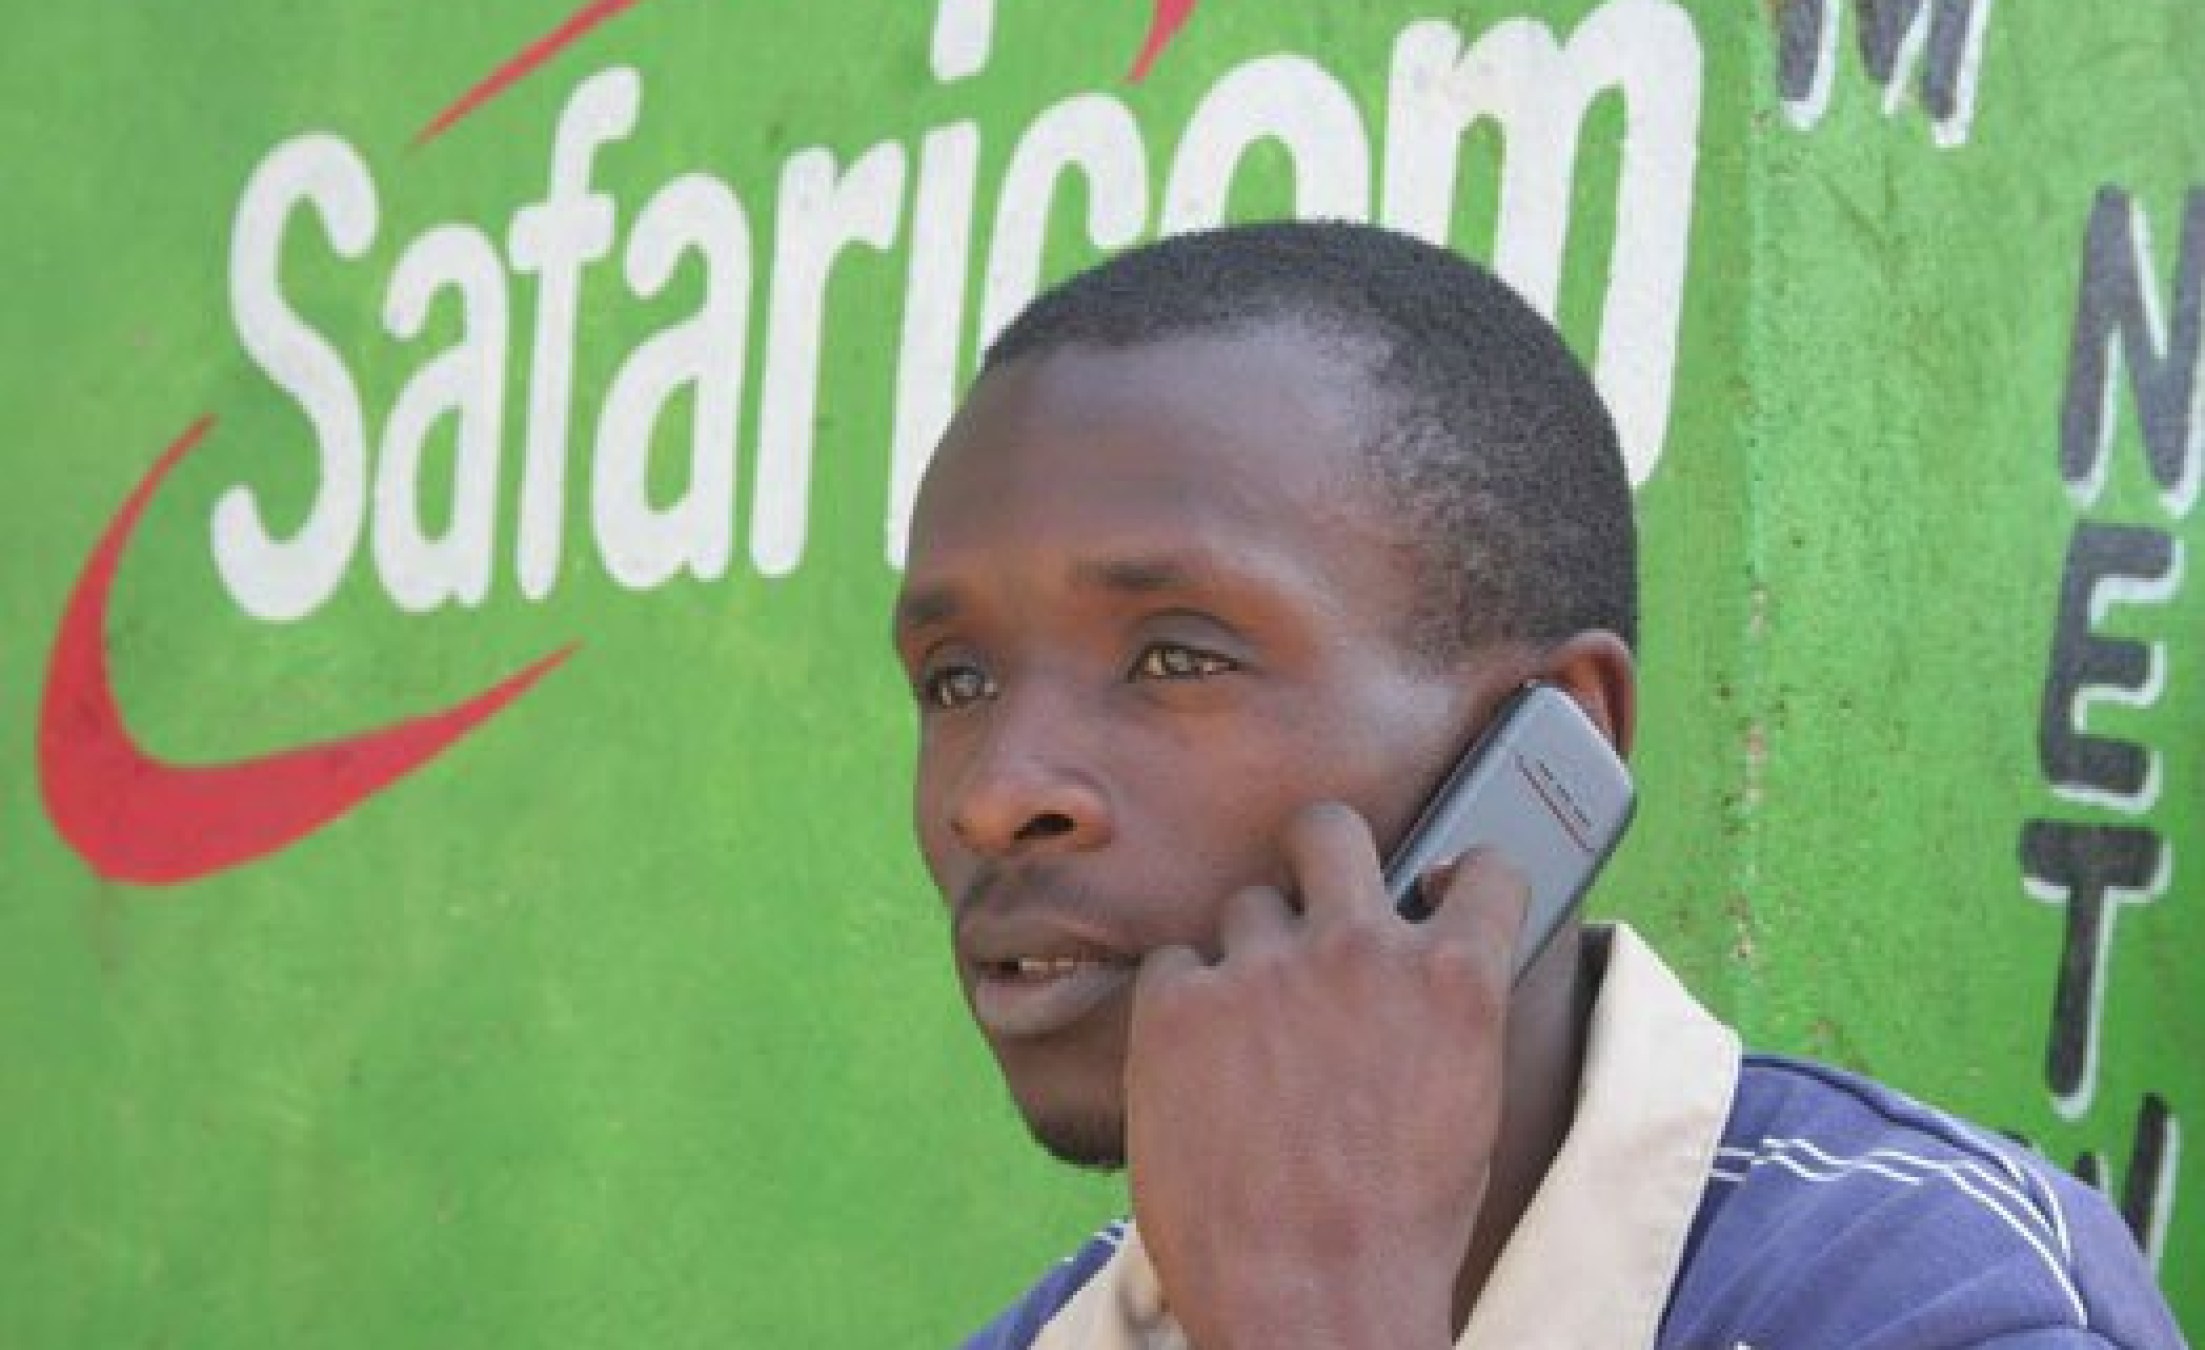 Ethiopia: Safaricom in Fight for Elusive Full Service Licence